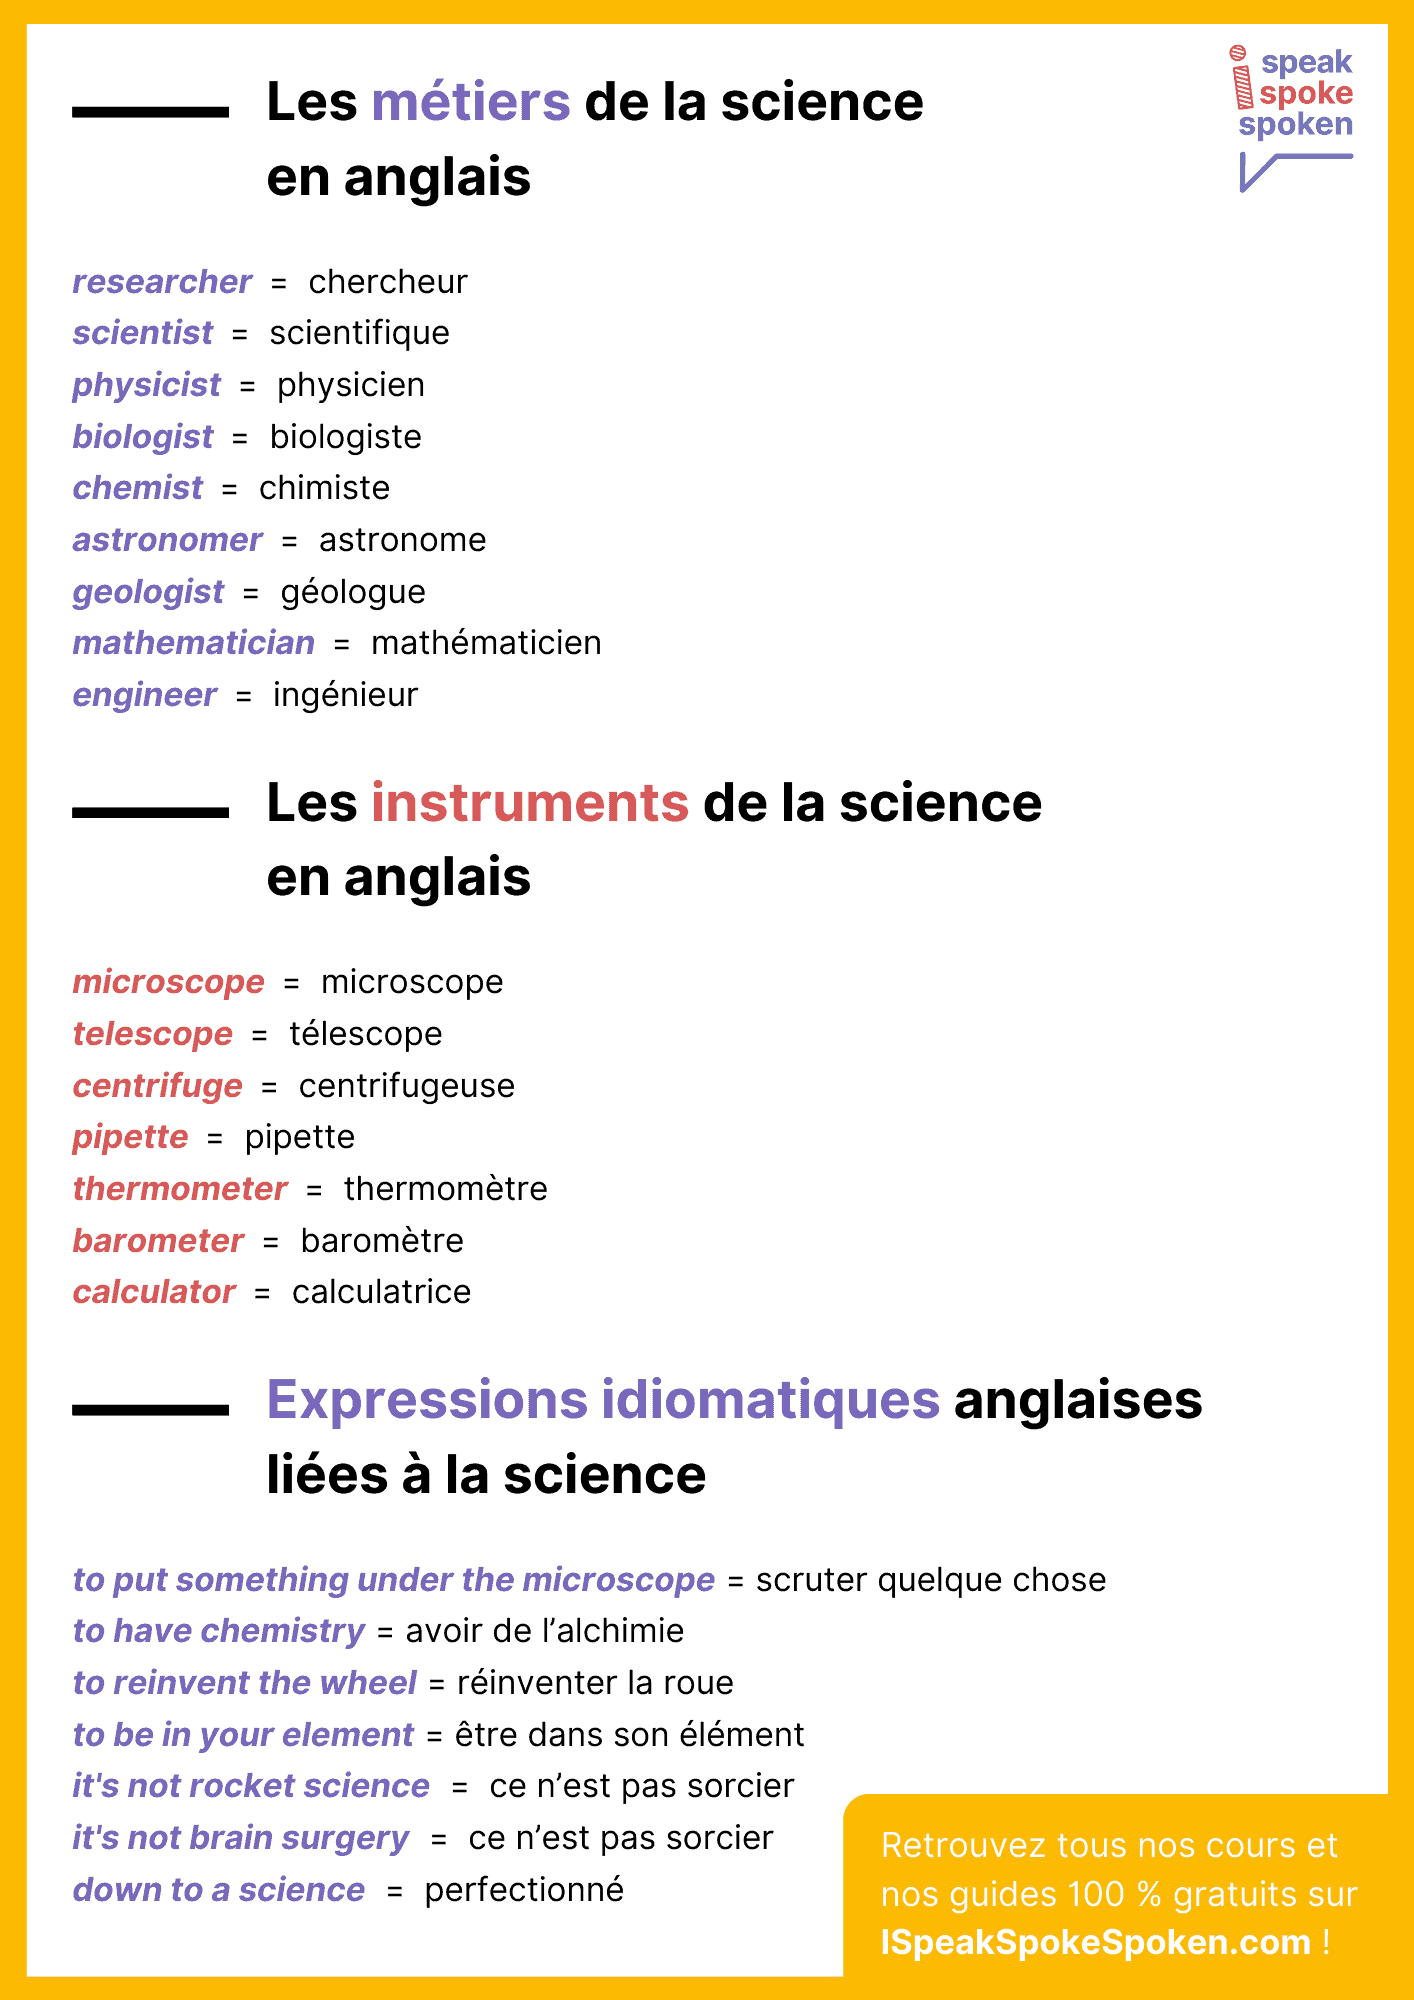 Métiers, instruments et expressions idiomatiques anglaises liés à la science